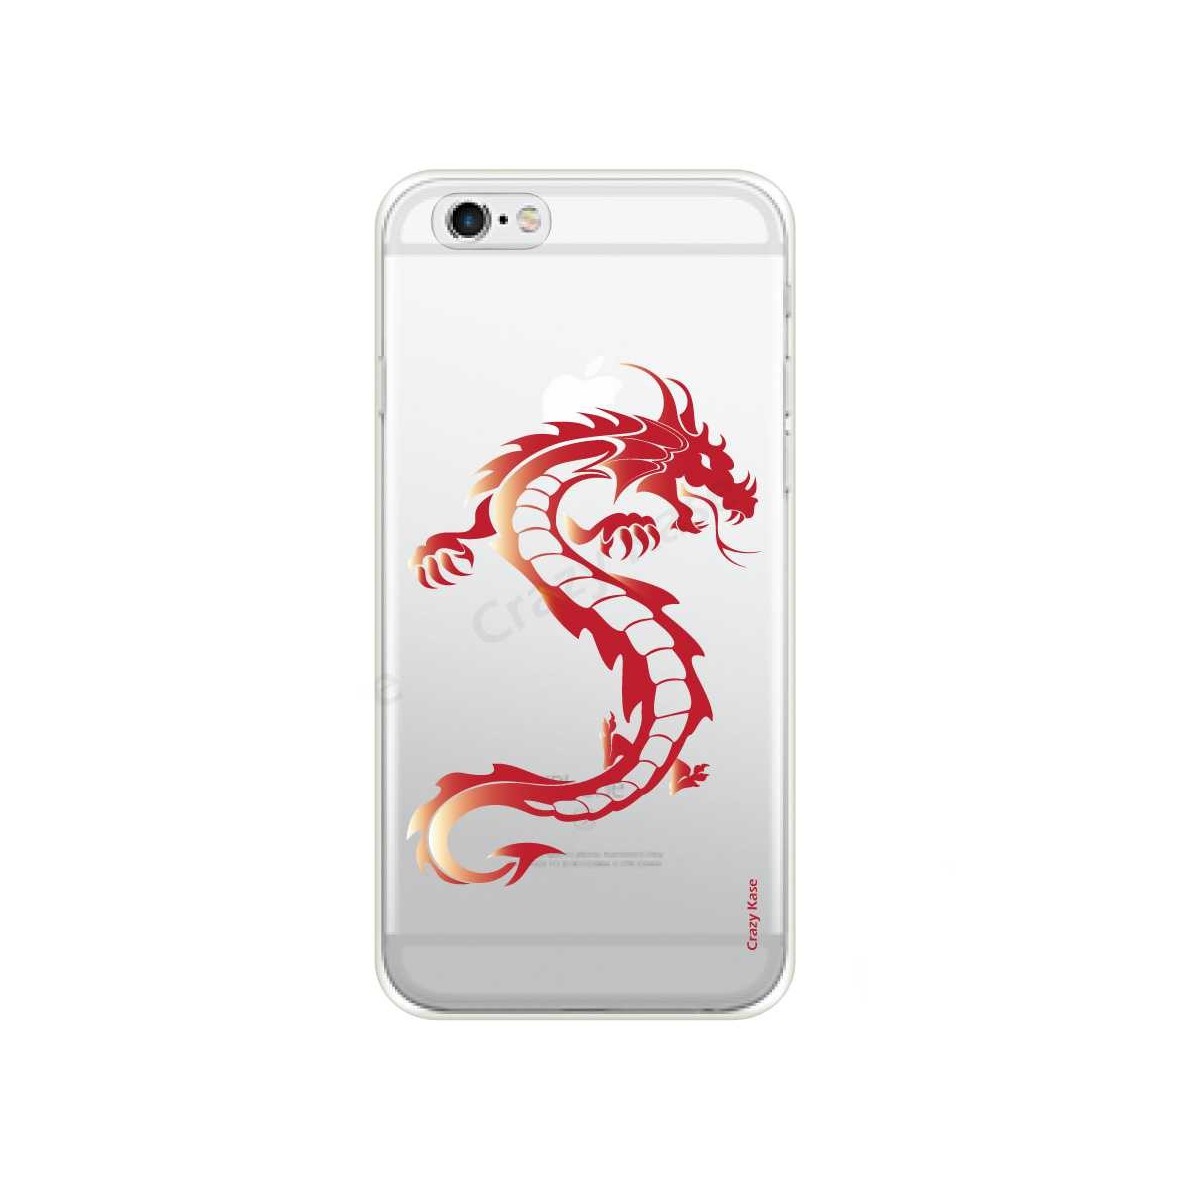 Coque iPhone 6 / 6s souple Dragon rouge - Crazy Kase